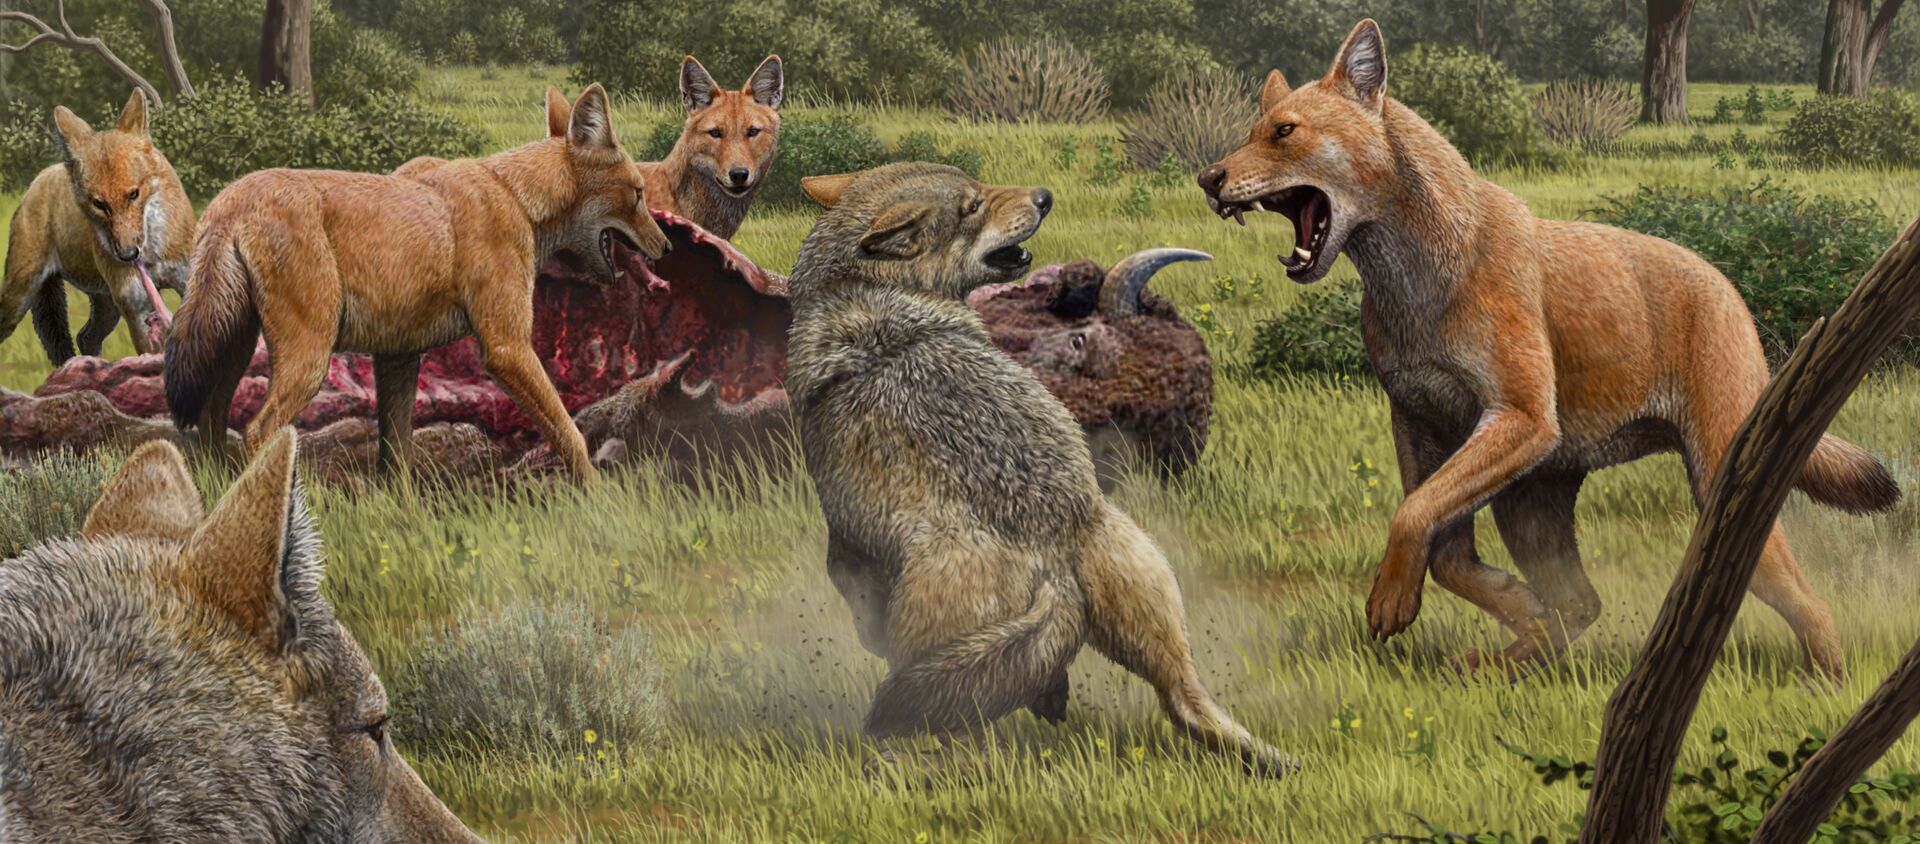 Una manada de lobos terribles (Canis dirus) se alimenta mientras que unos lobos grises se acercan para compartir la comida - Sputnik Mundo, 1920, 15.01.2021